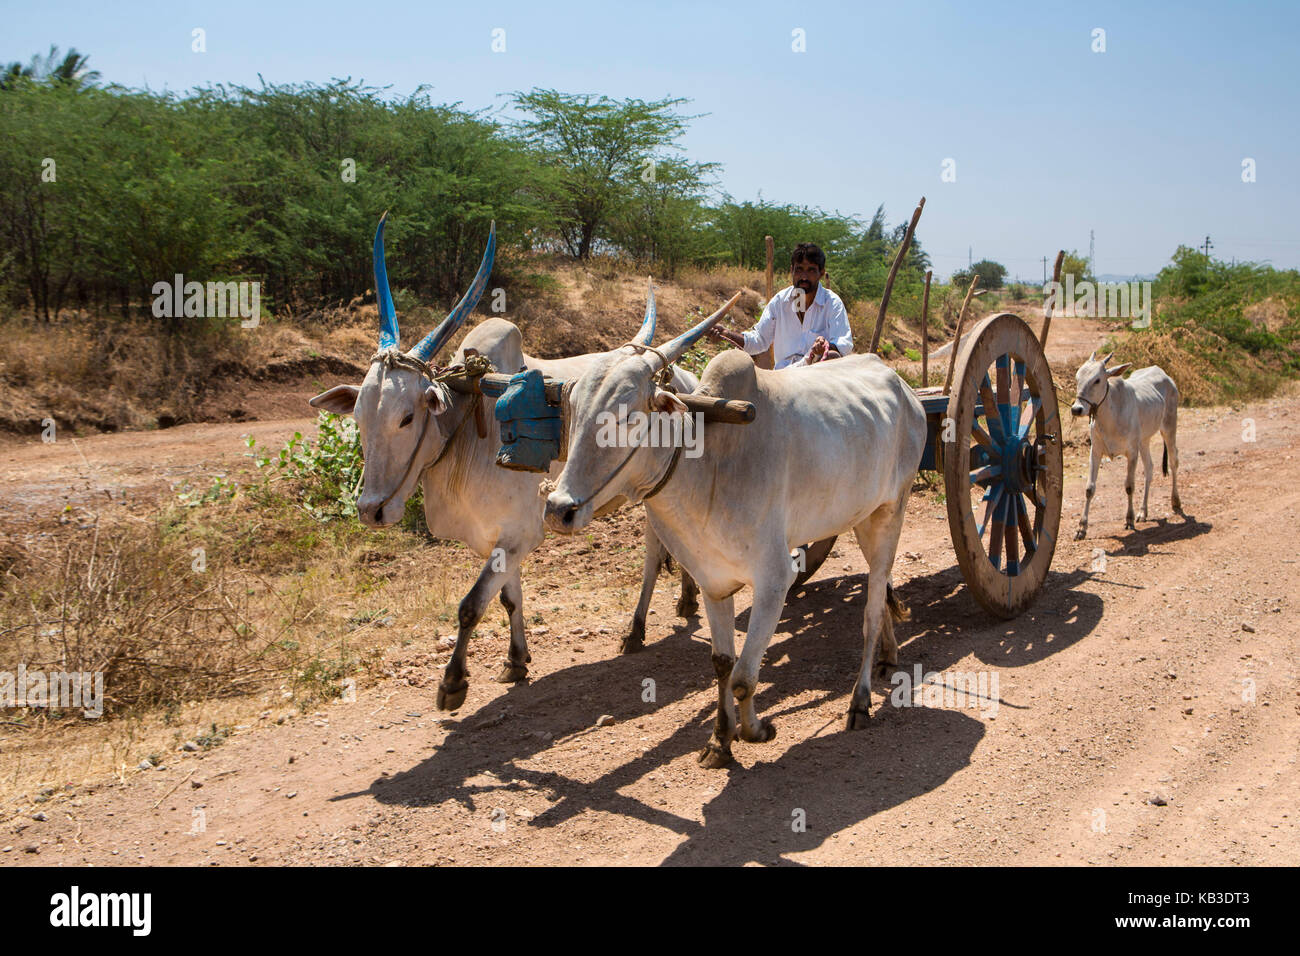 India, Karnataka, agricultor con carros de buey Foto de stock